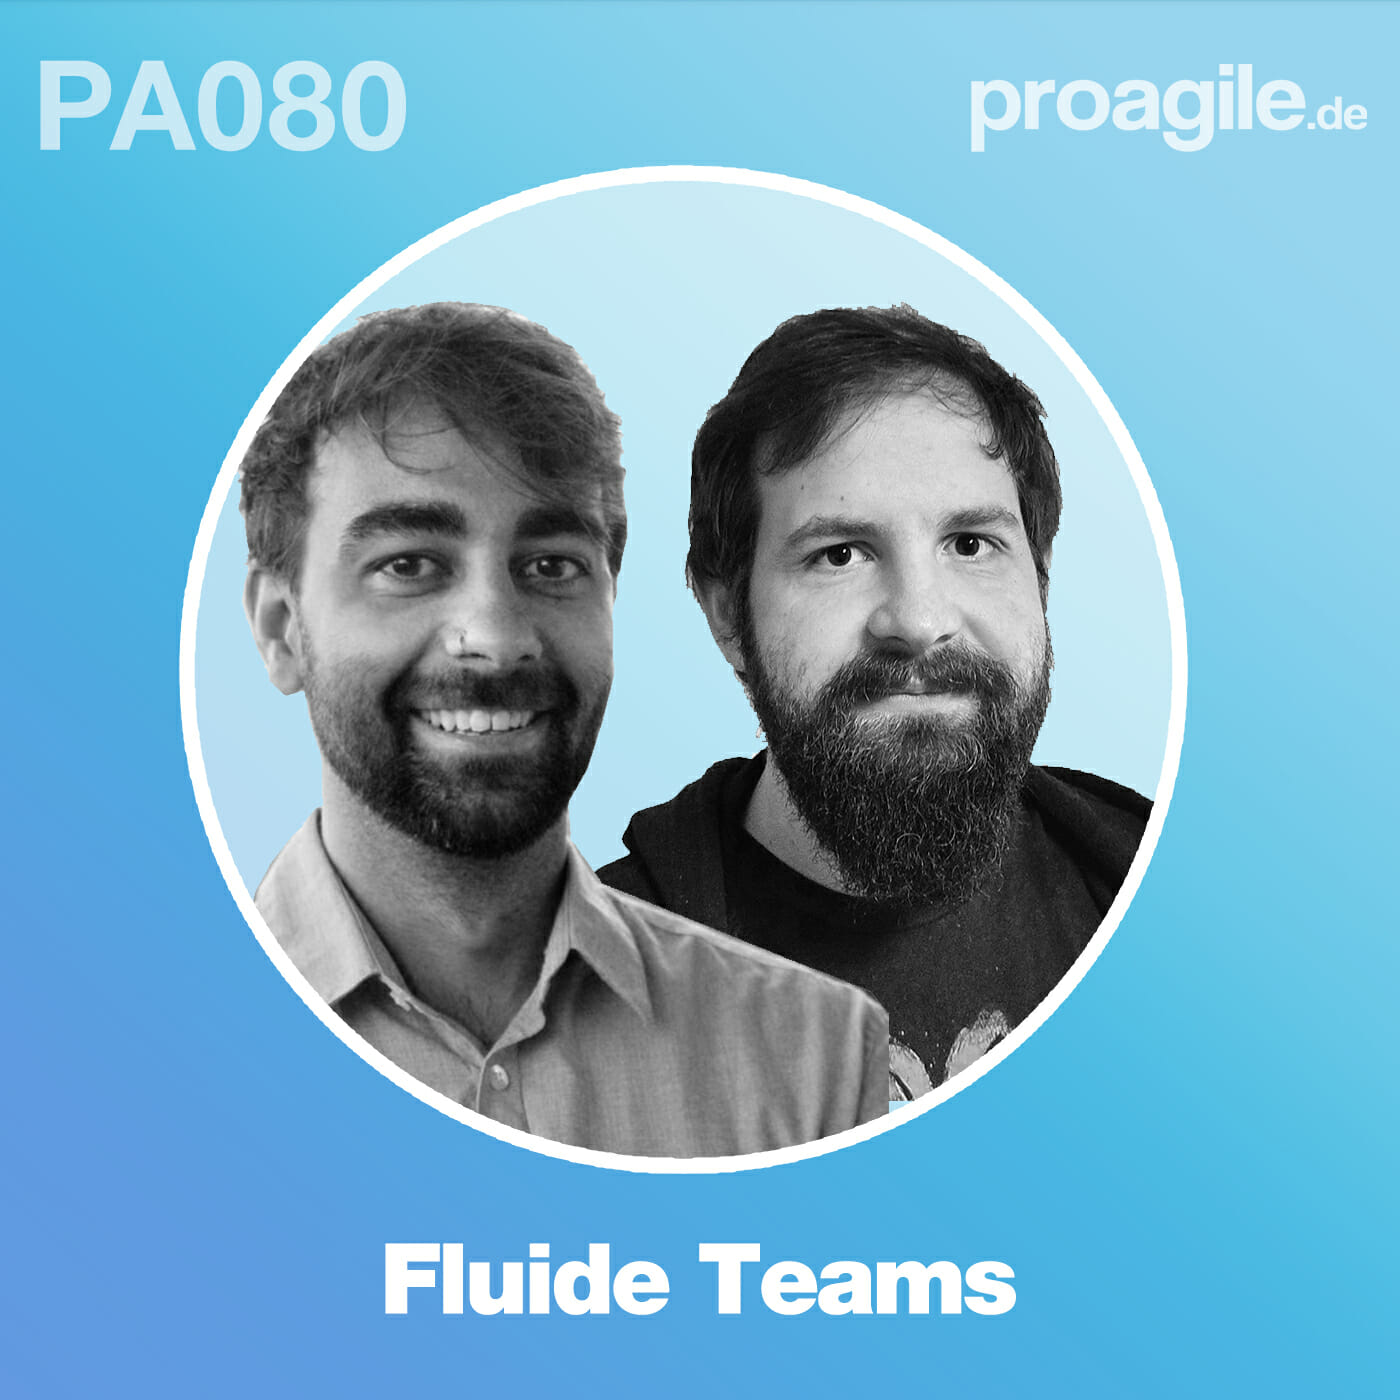 PA080 Fluide Teams